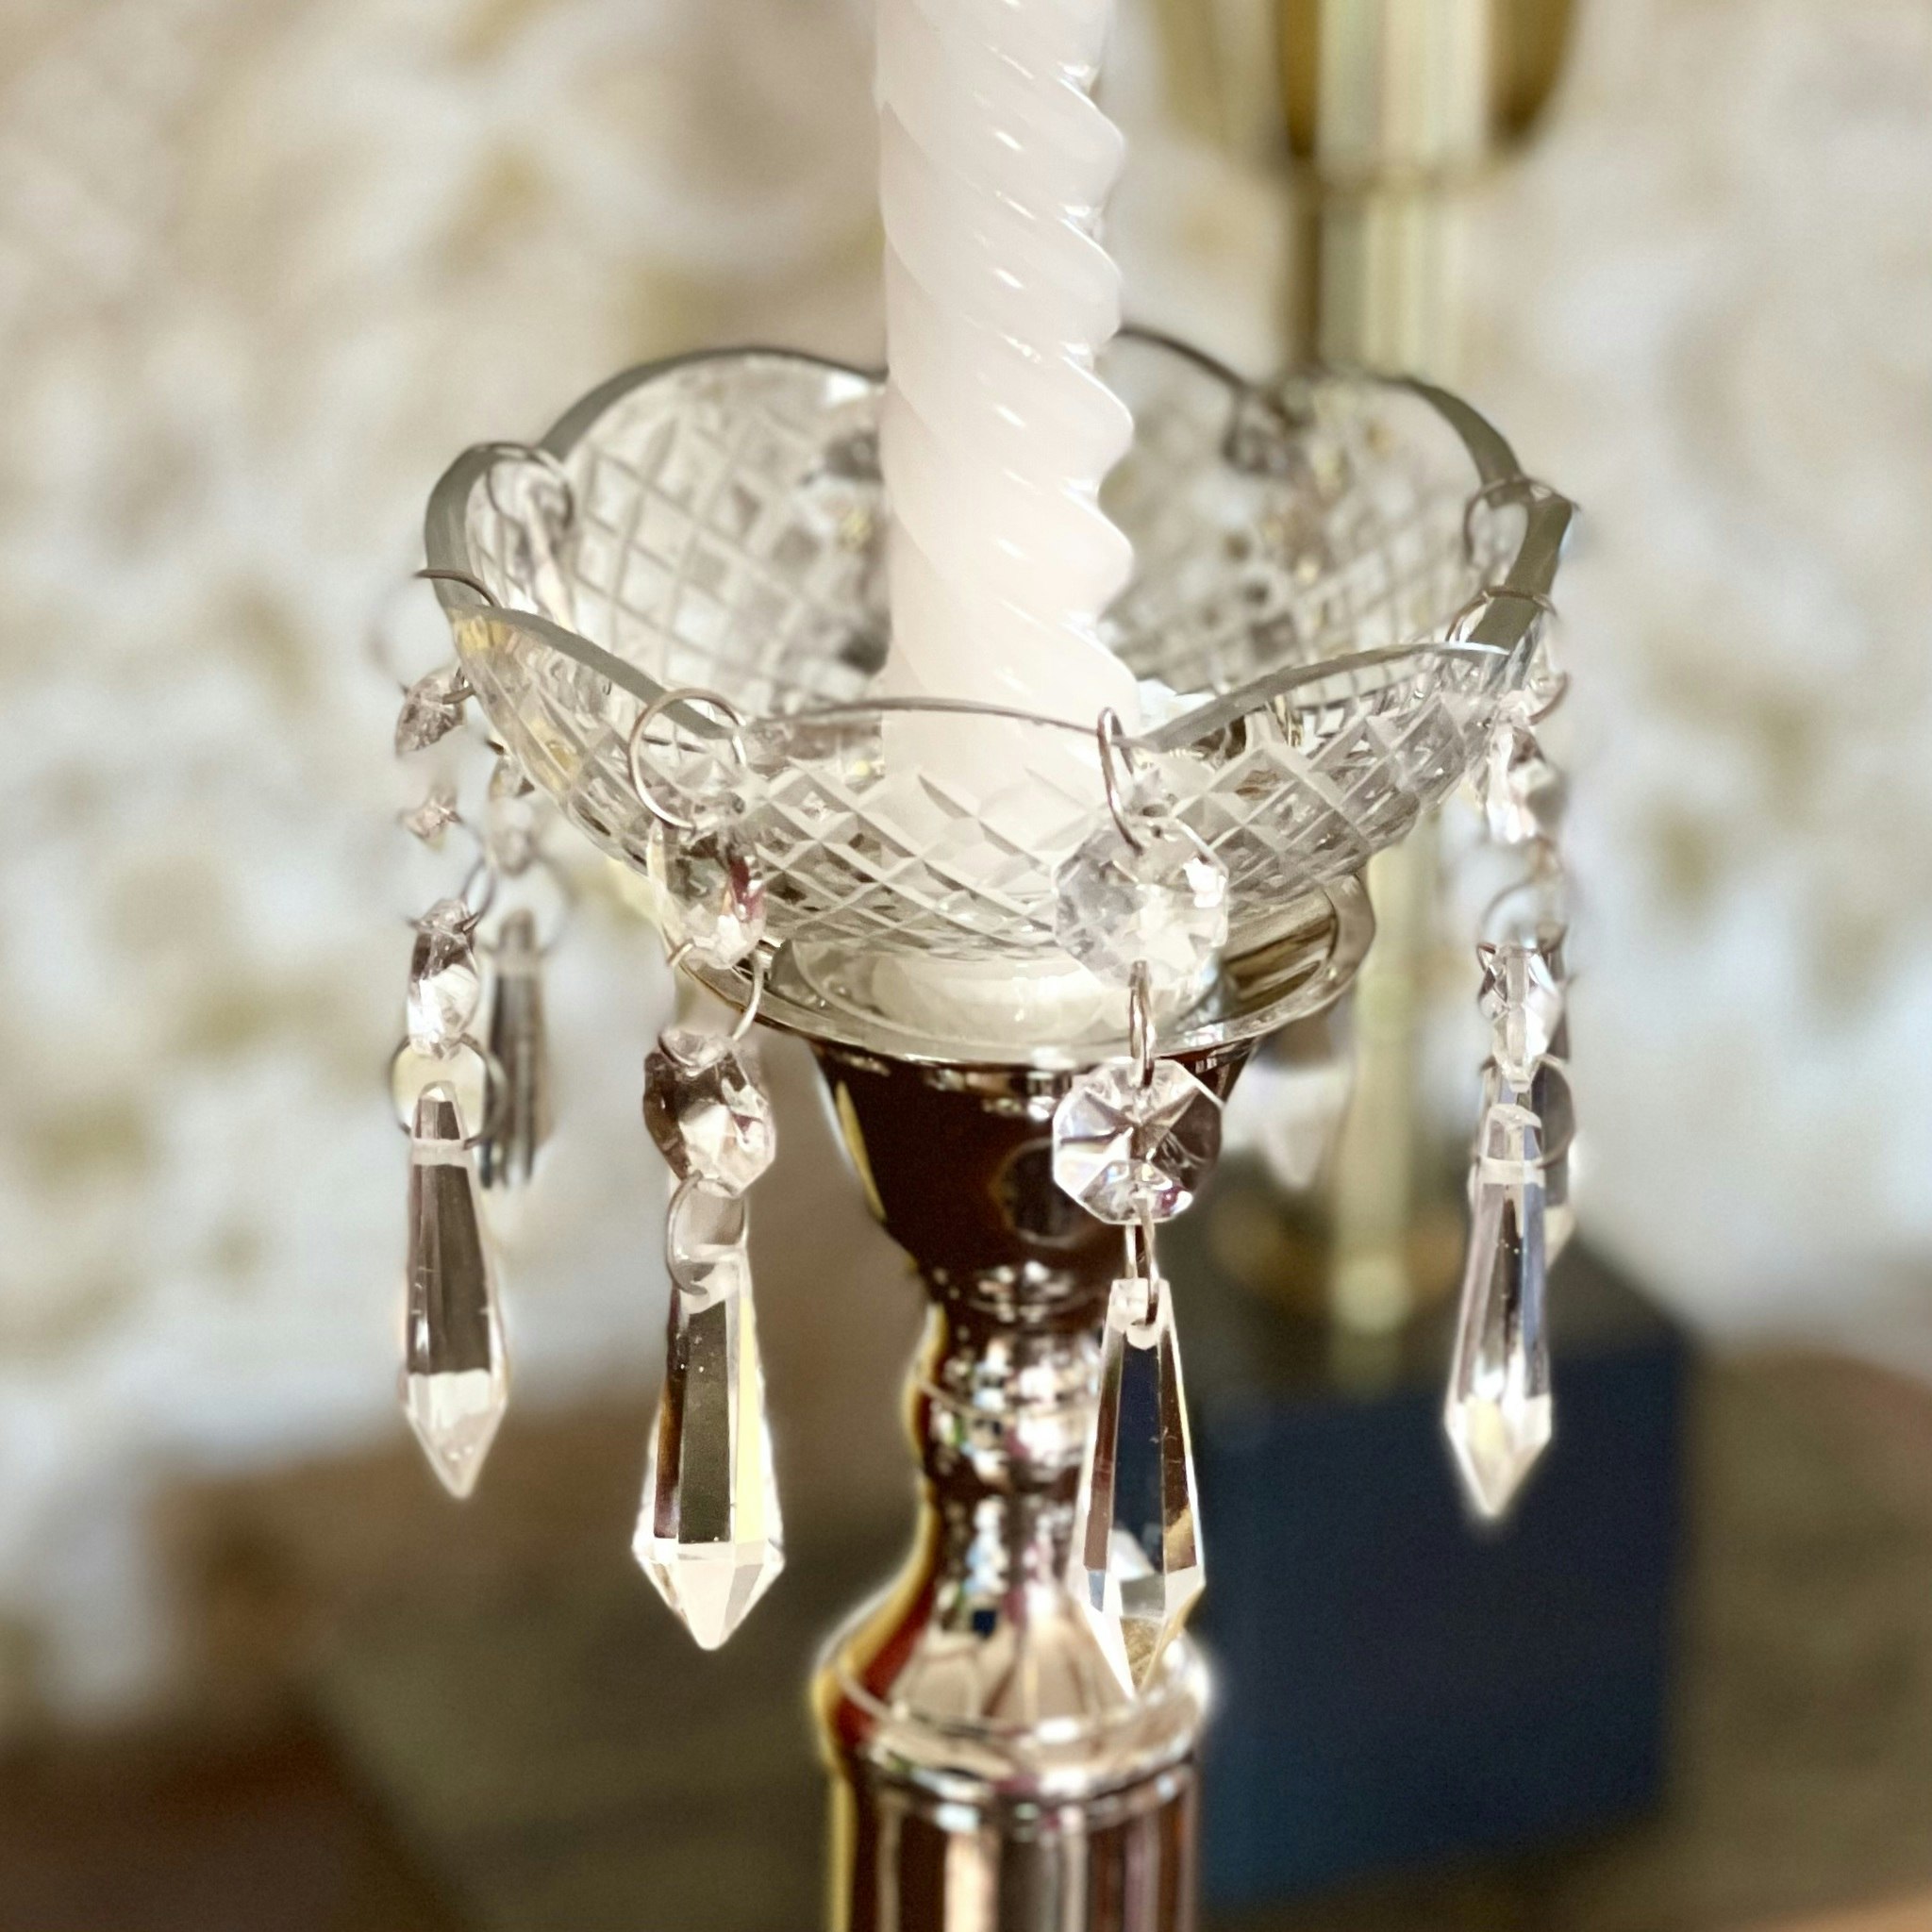 Ljusmanschett i glas med hängande prismor - Fynda hemifrån på loppis.design